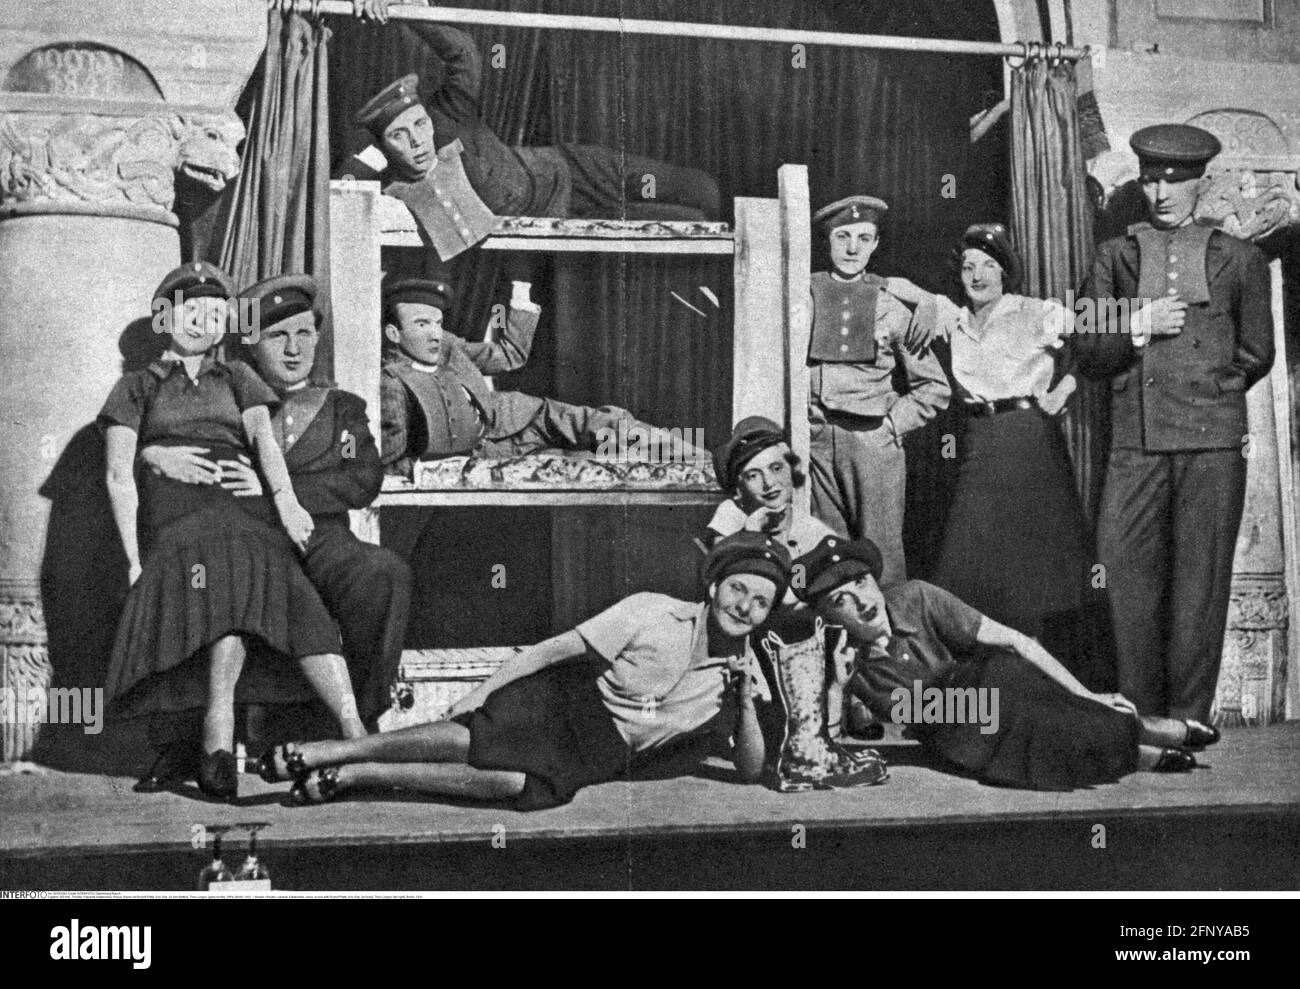 théâtre / théâtre, cabaret, Katakombe, revue, scène avec Rudolf Platte, Eric Ode, (dans les lits), DROITS-SUPPLÉMENTAIRES-AUTORISATION-INFO-NON-DISPONIBLE Banque D'Images